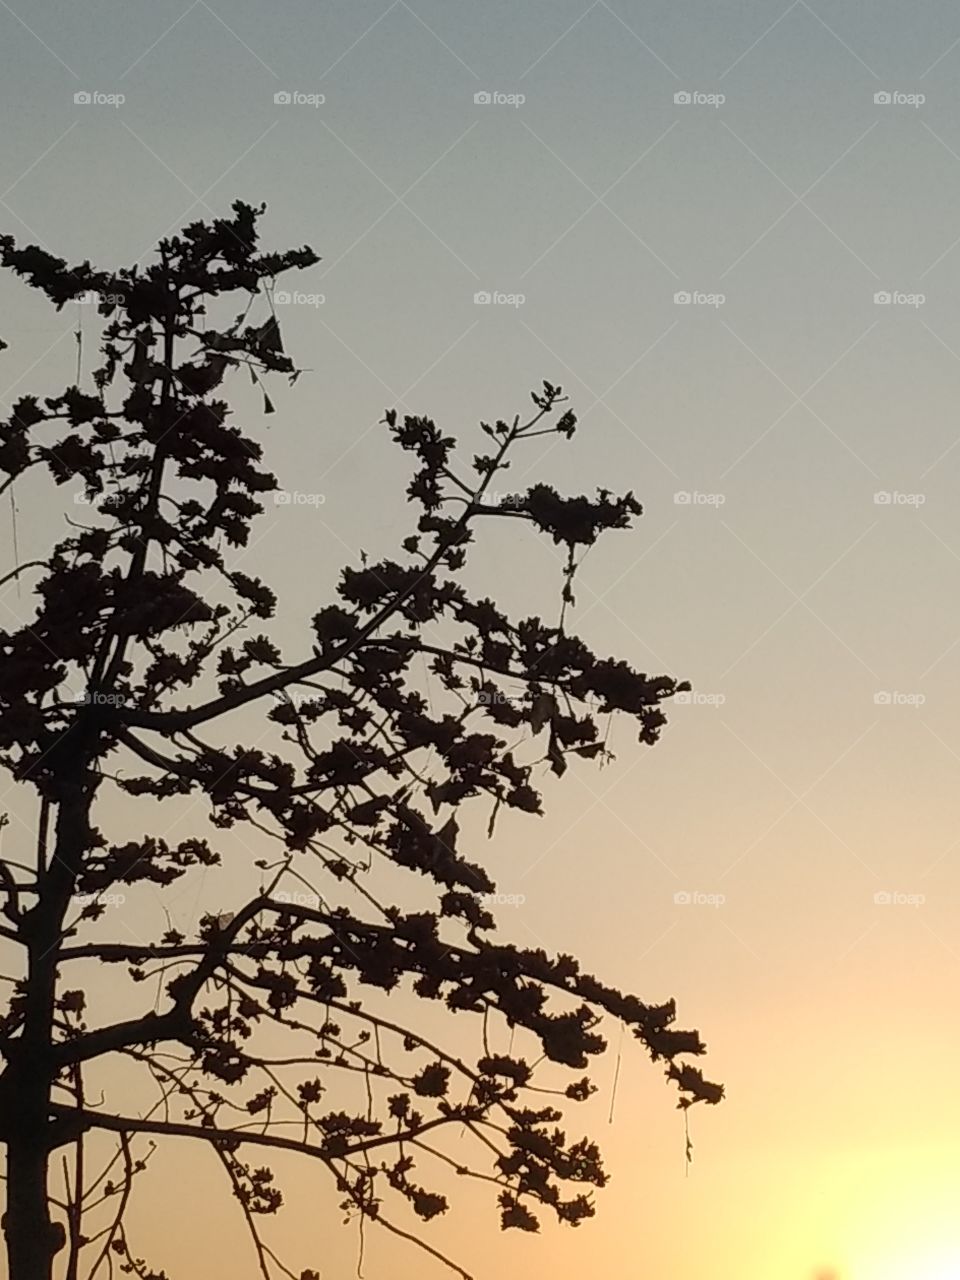 sunset & tree